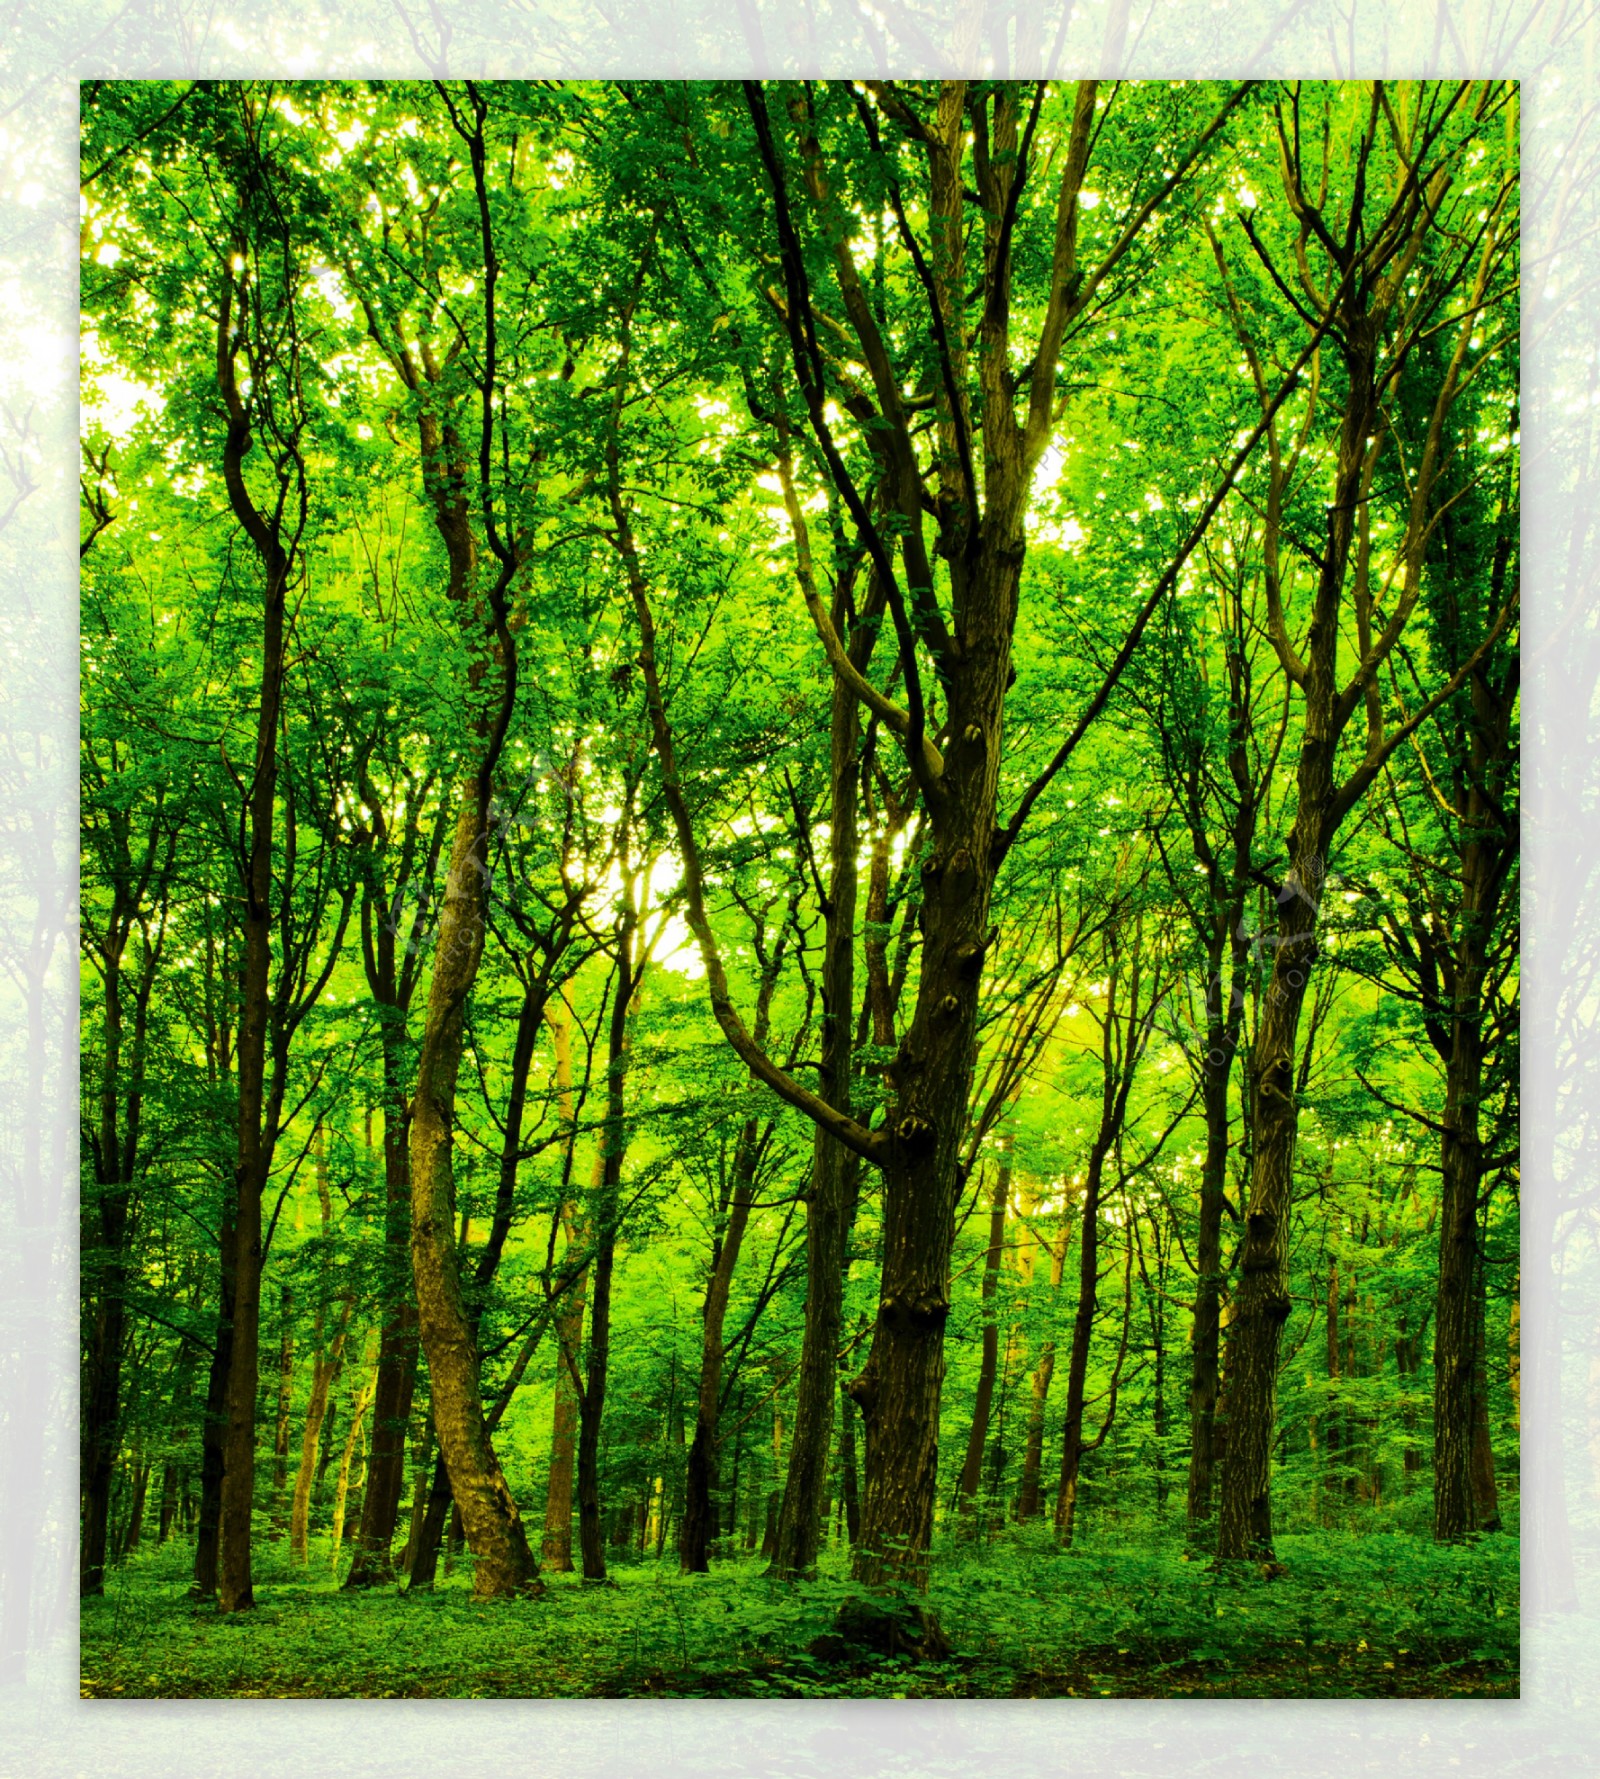 森林树木小路光照风景壁纸-壁纸图片大全